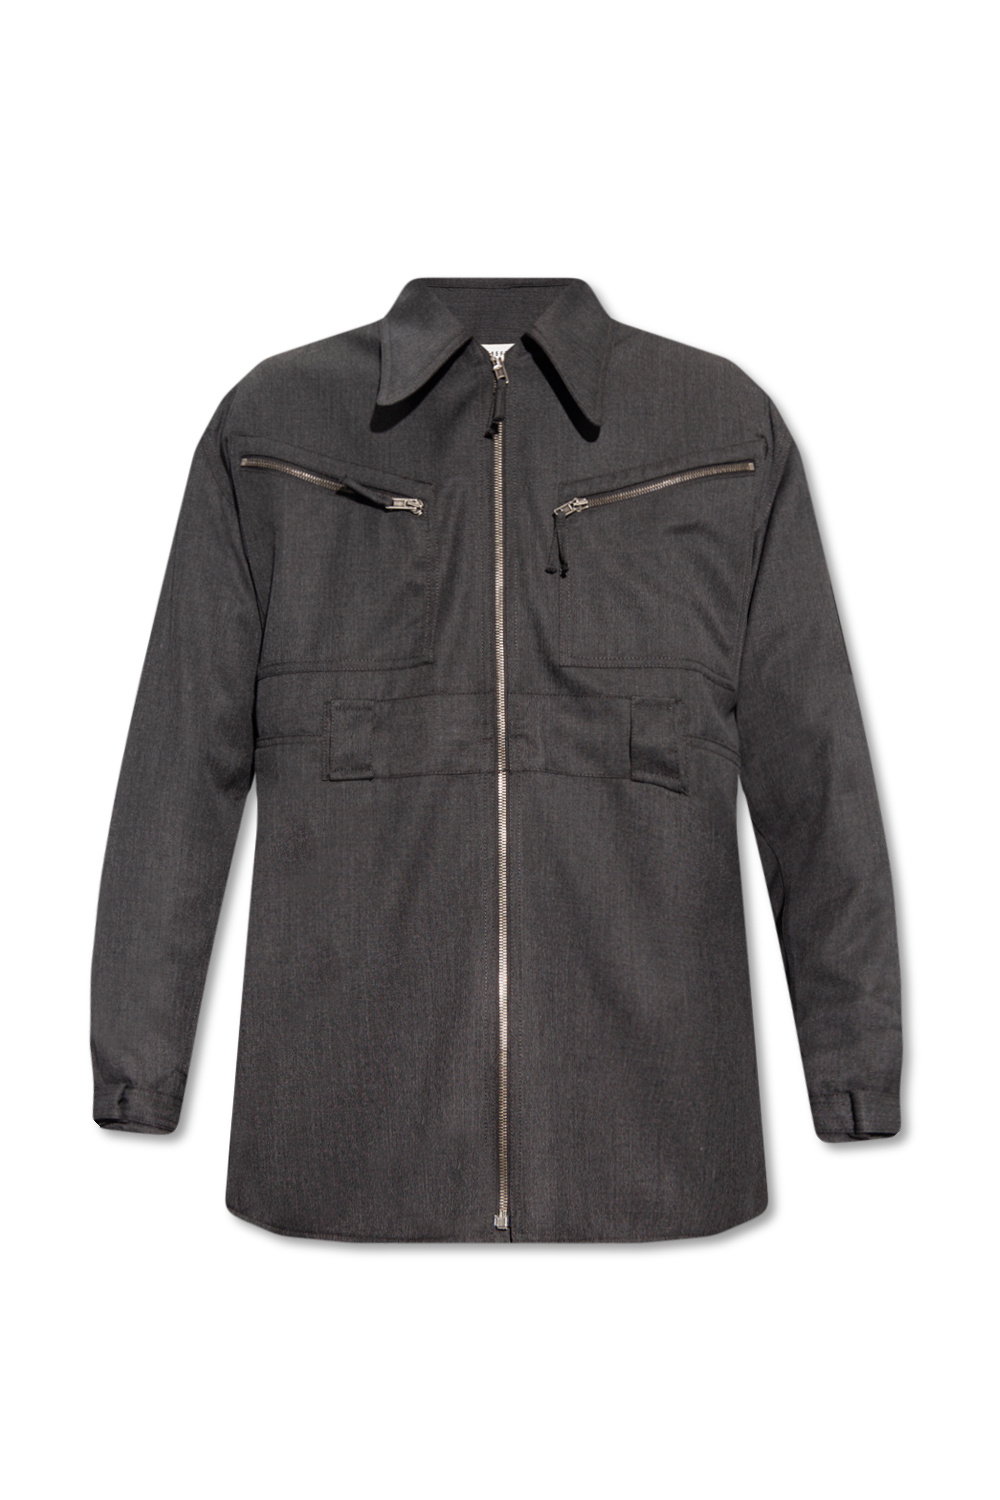 Maison Margiela Cotton B-Neck jacket